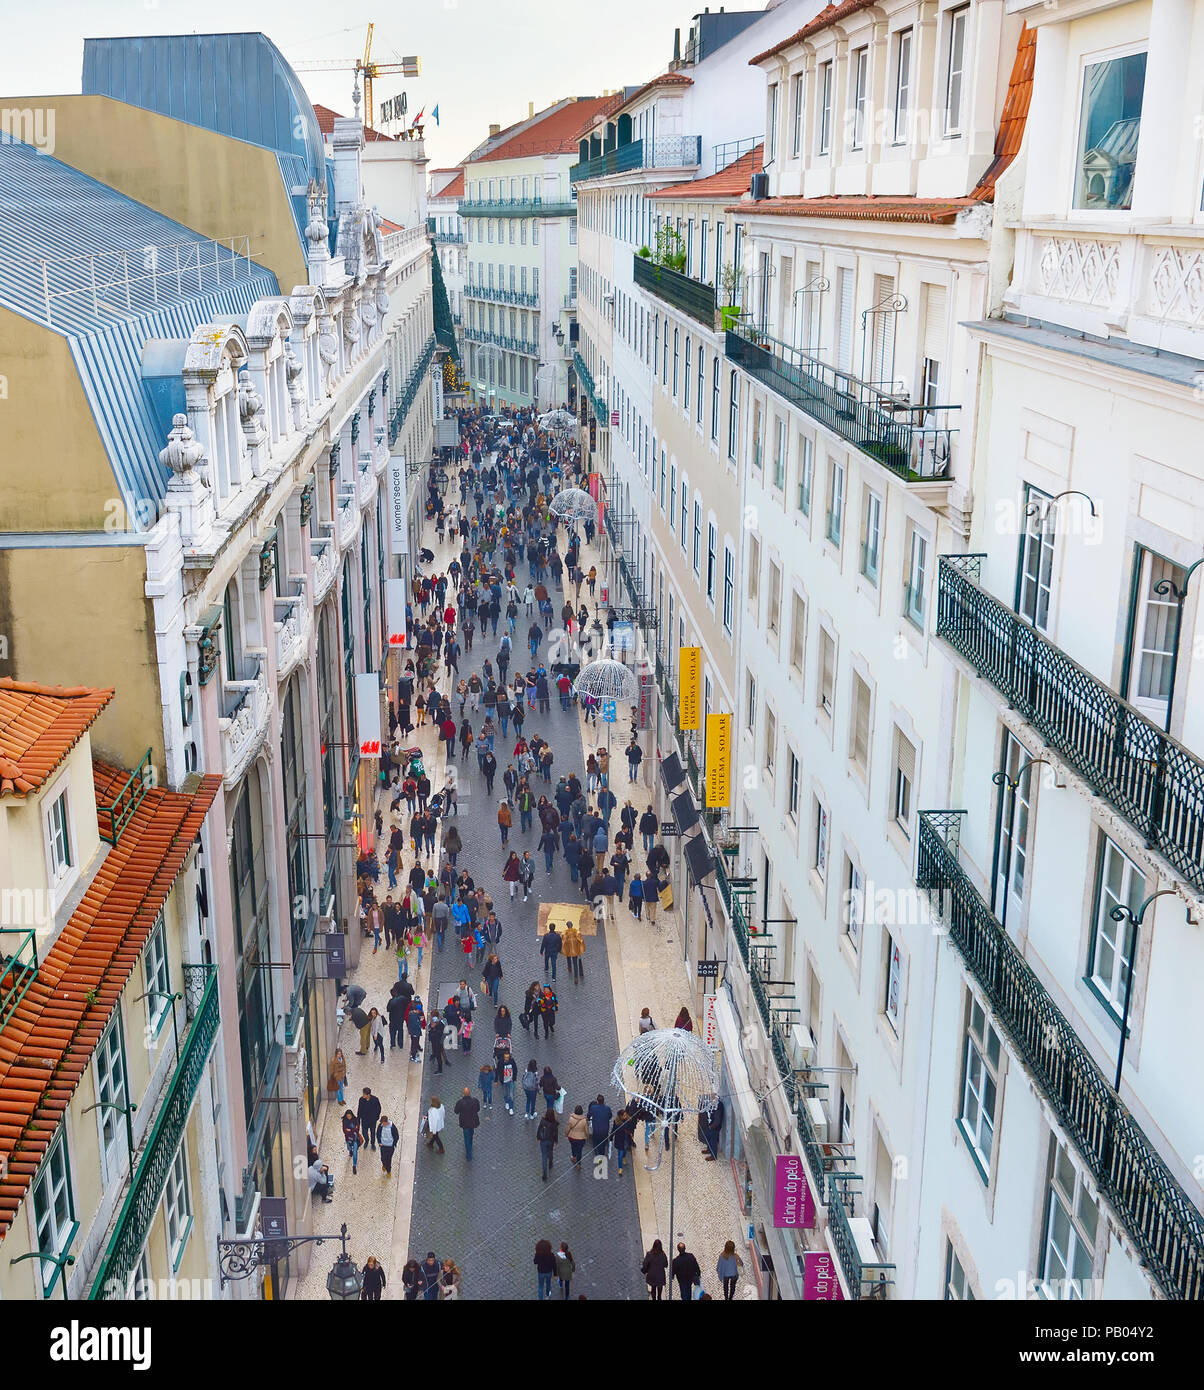 Lisbona, Portogallo - Dicembre 08, 2016: vista dalla cima di Santa Justa Elevator di Rua do Carmo, la strada dello shopping di Lisbona con la gente camminare lungo th Foto Stock